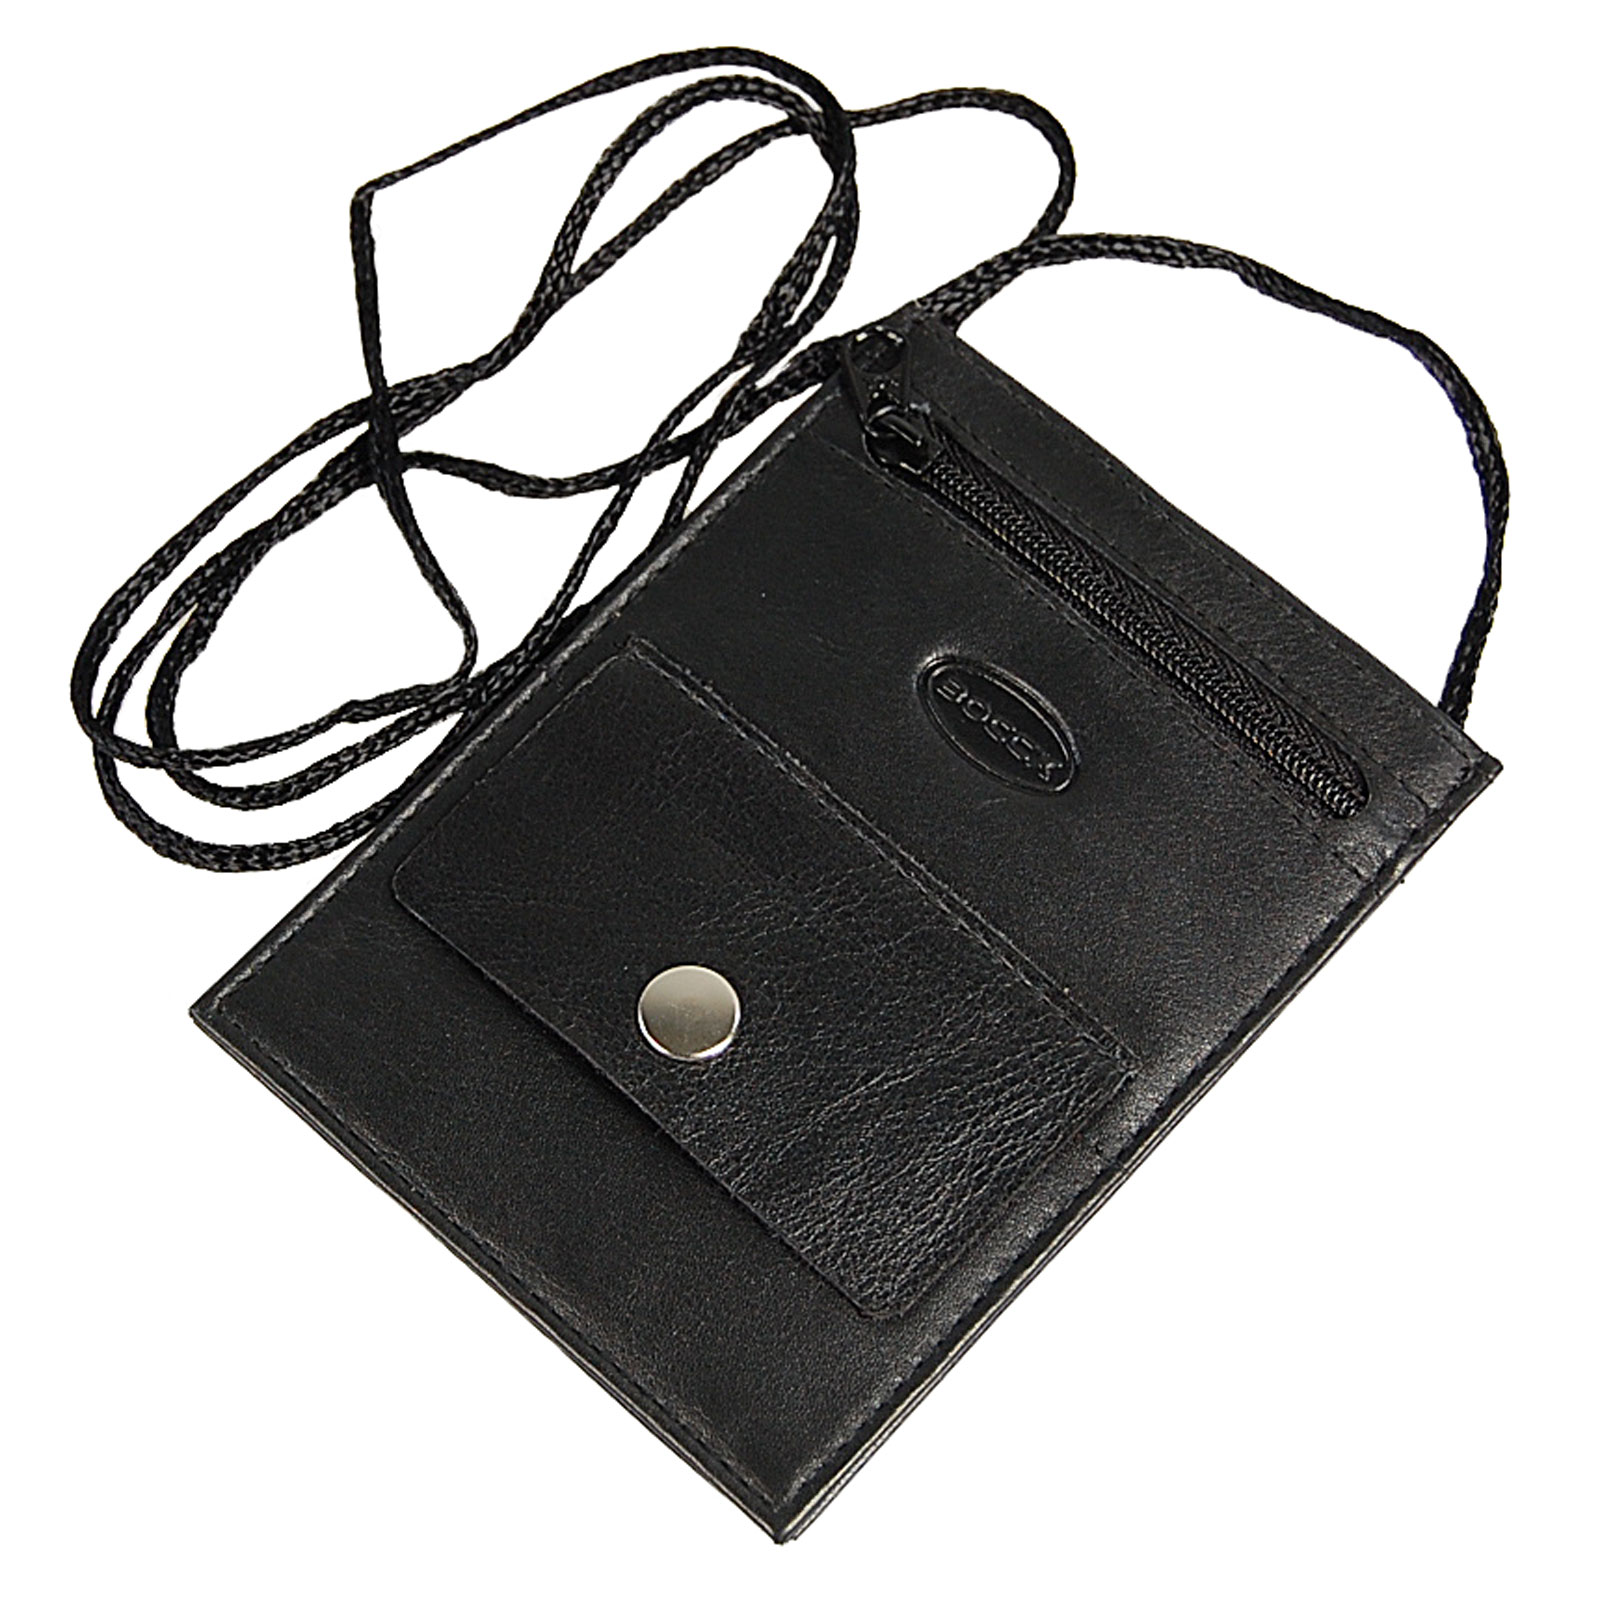 Boccx Markenshop - Kleiner Brustbeutel Leder mit RFID Blocker Brusttasche  Klarsichtfach Security Wallet 10017